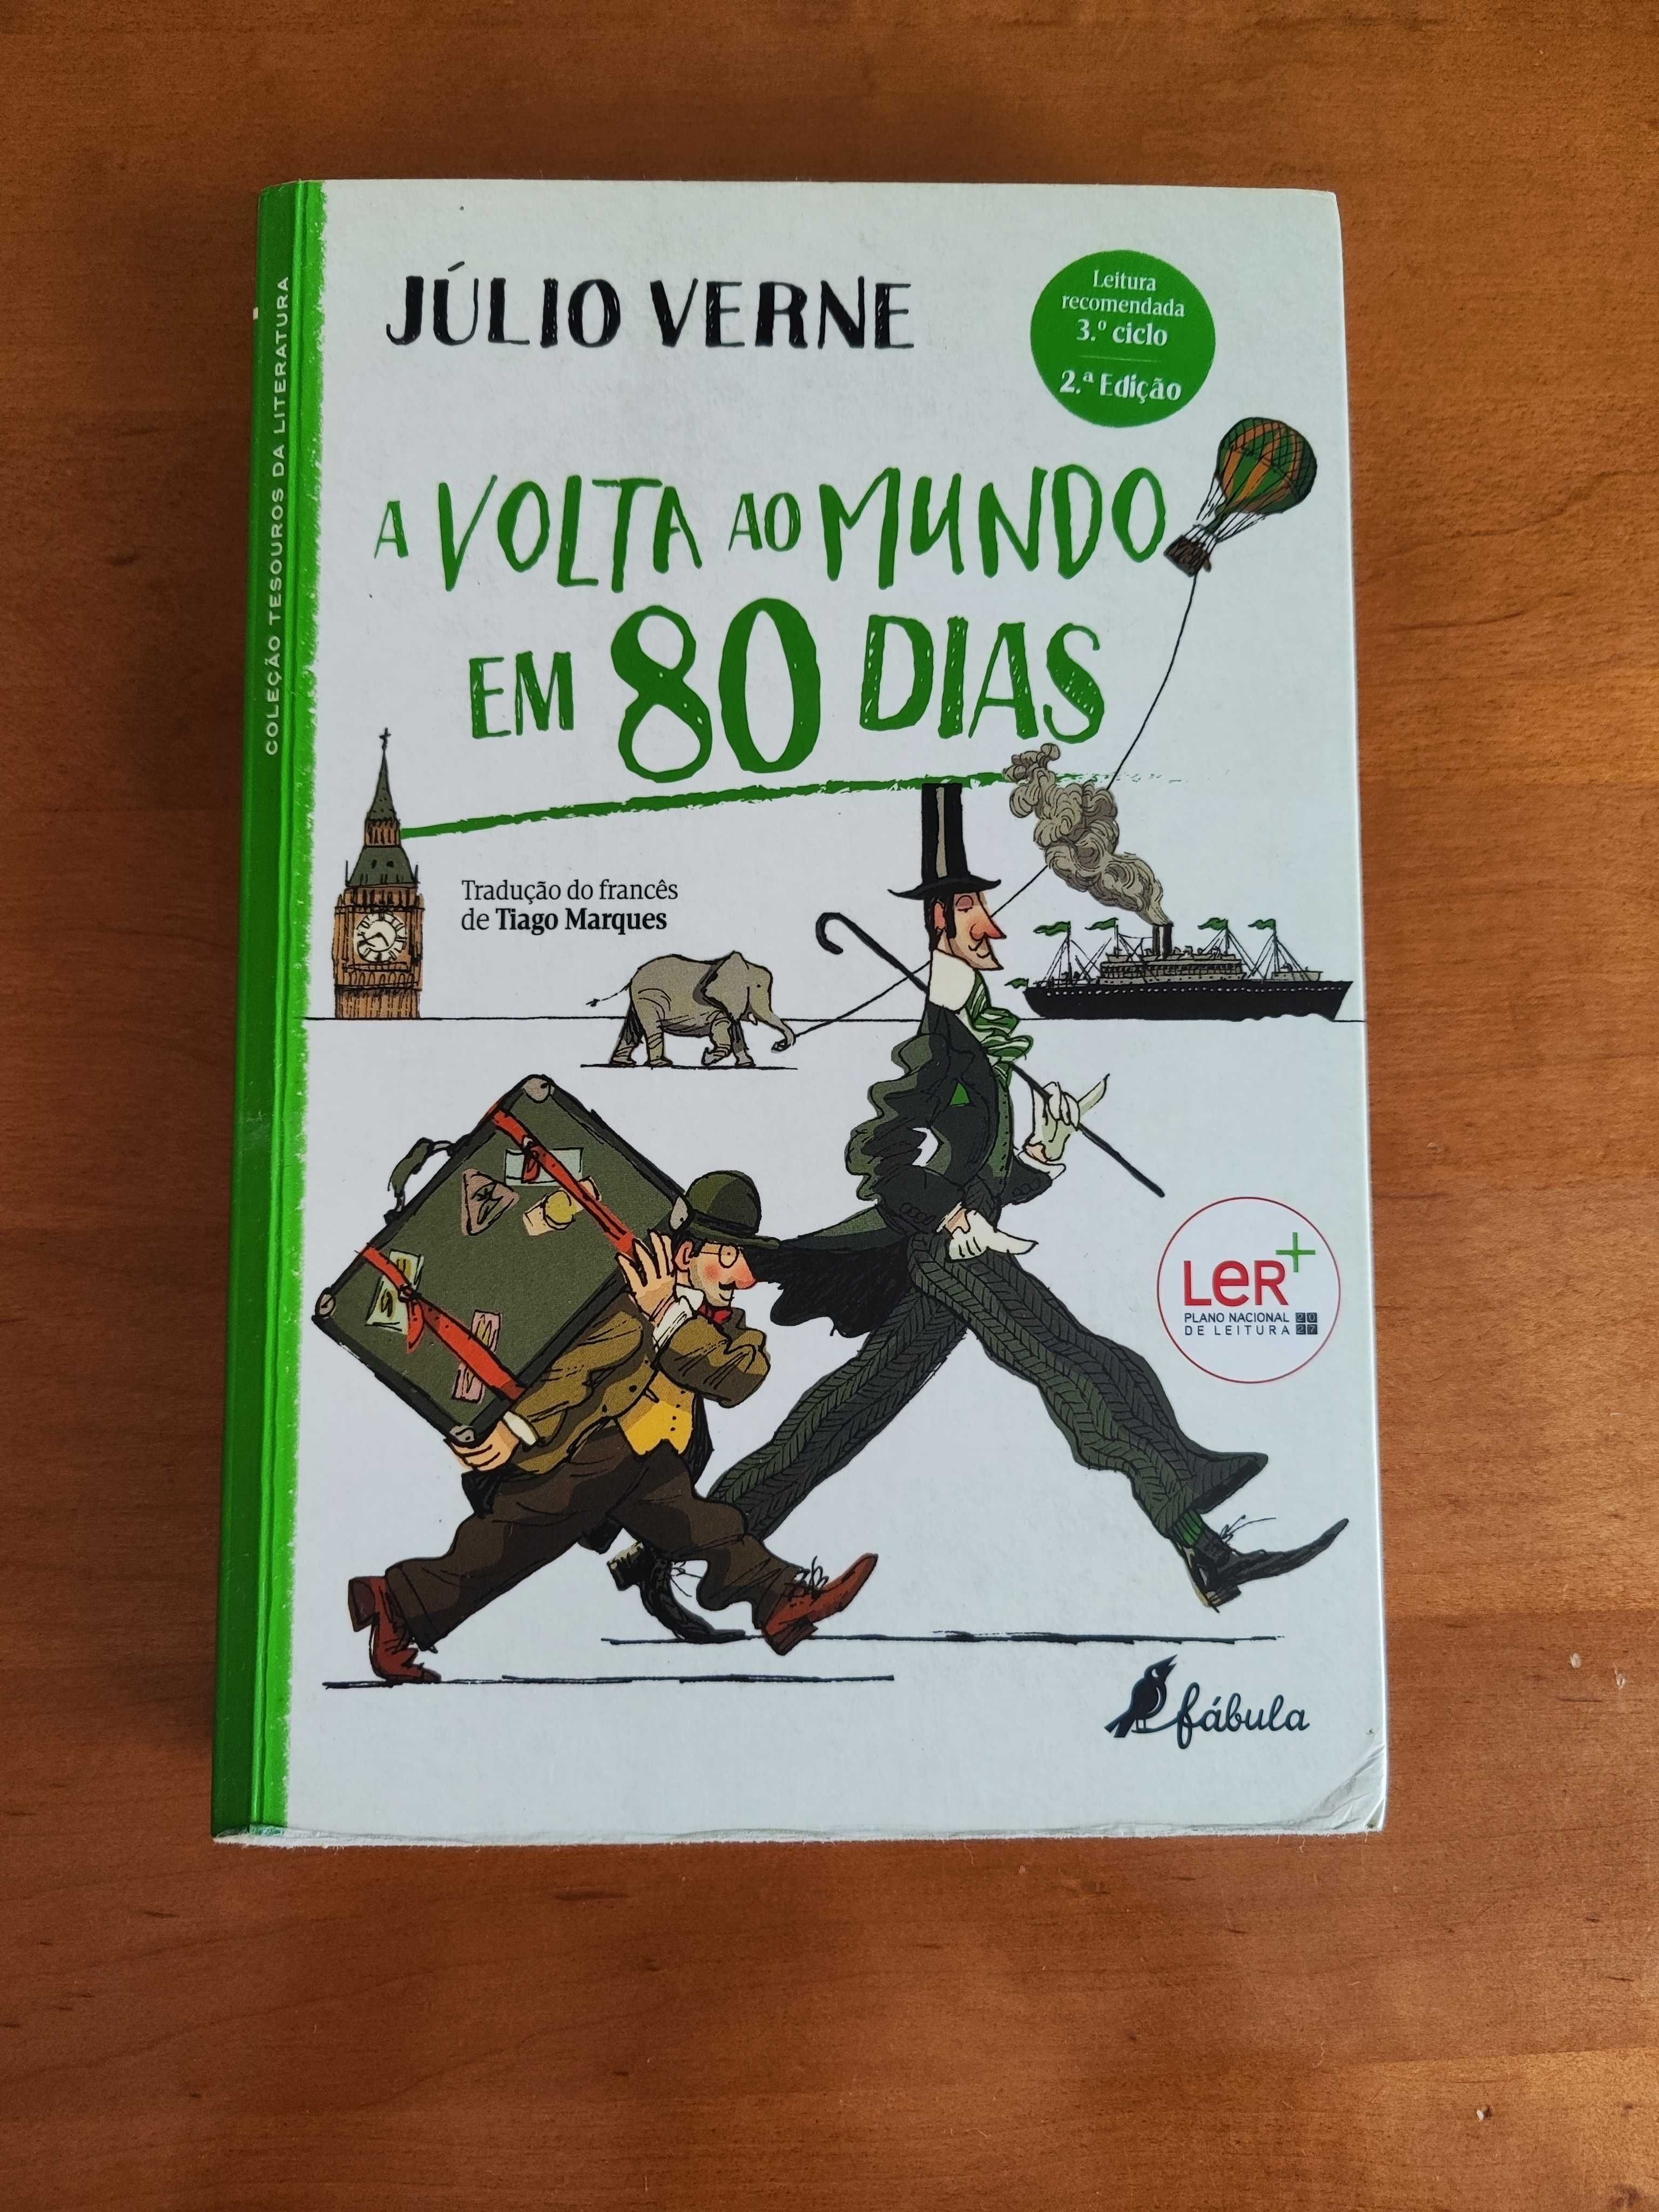 Livro "A Volta ao Mundo em 80 Dias" - Júlio Verne